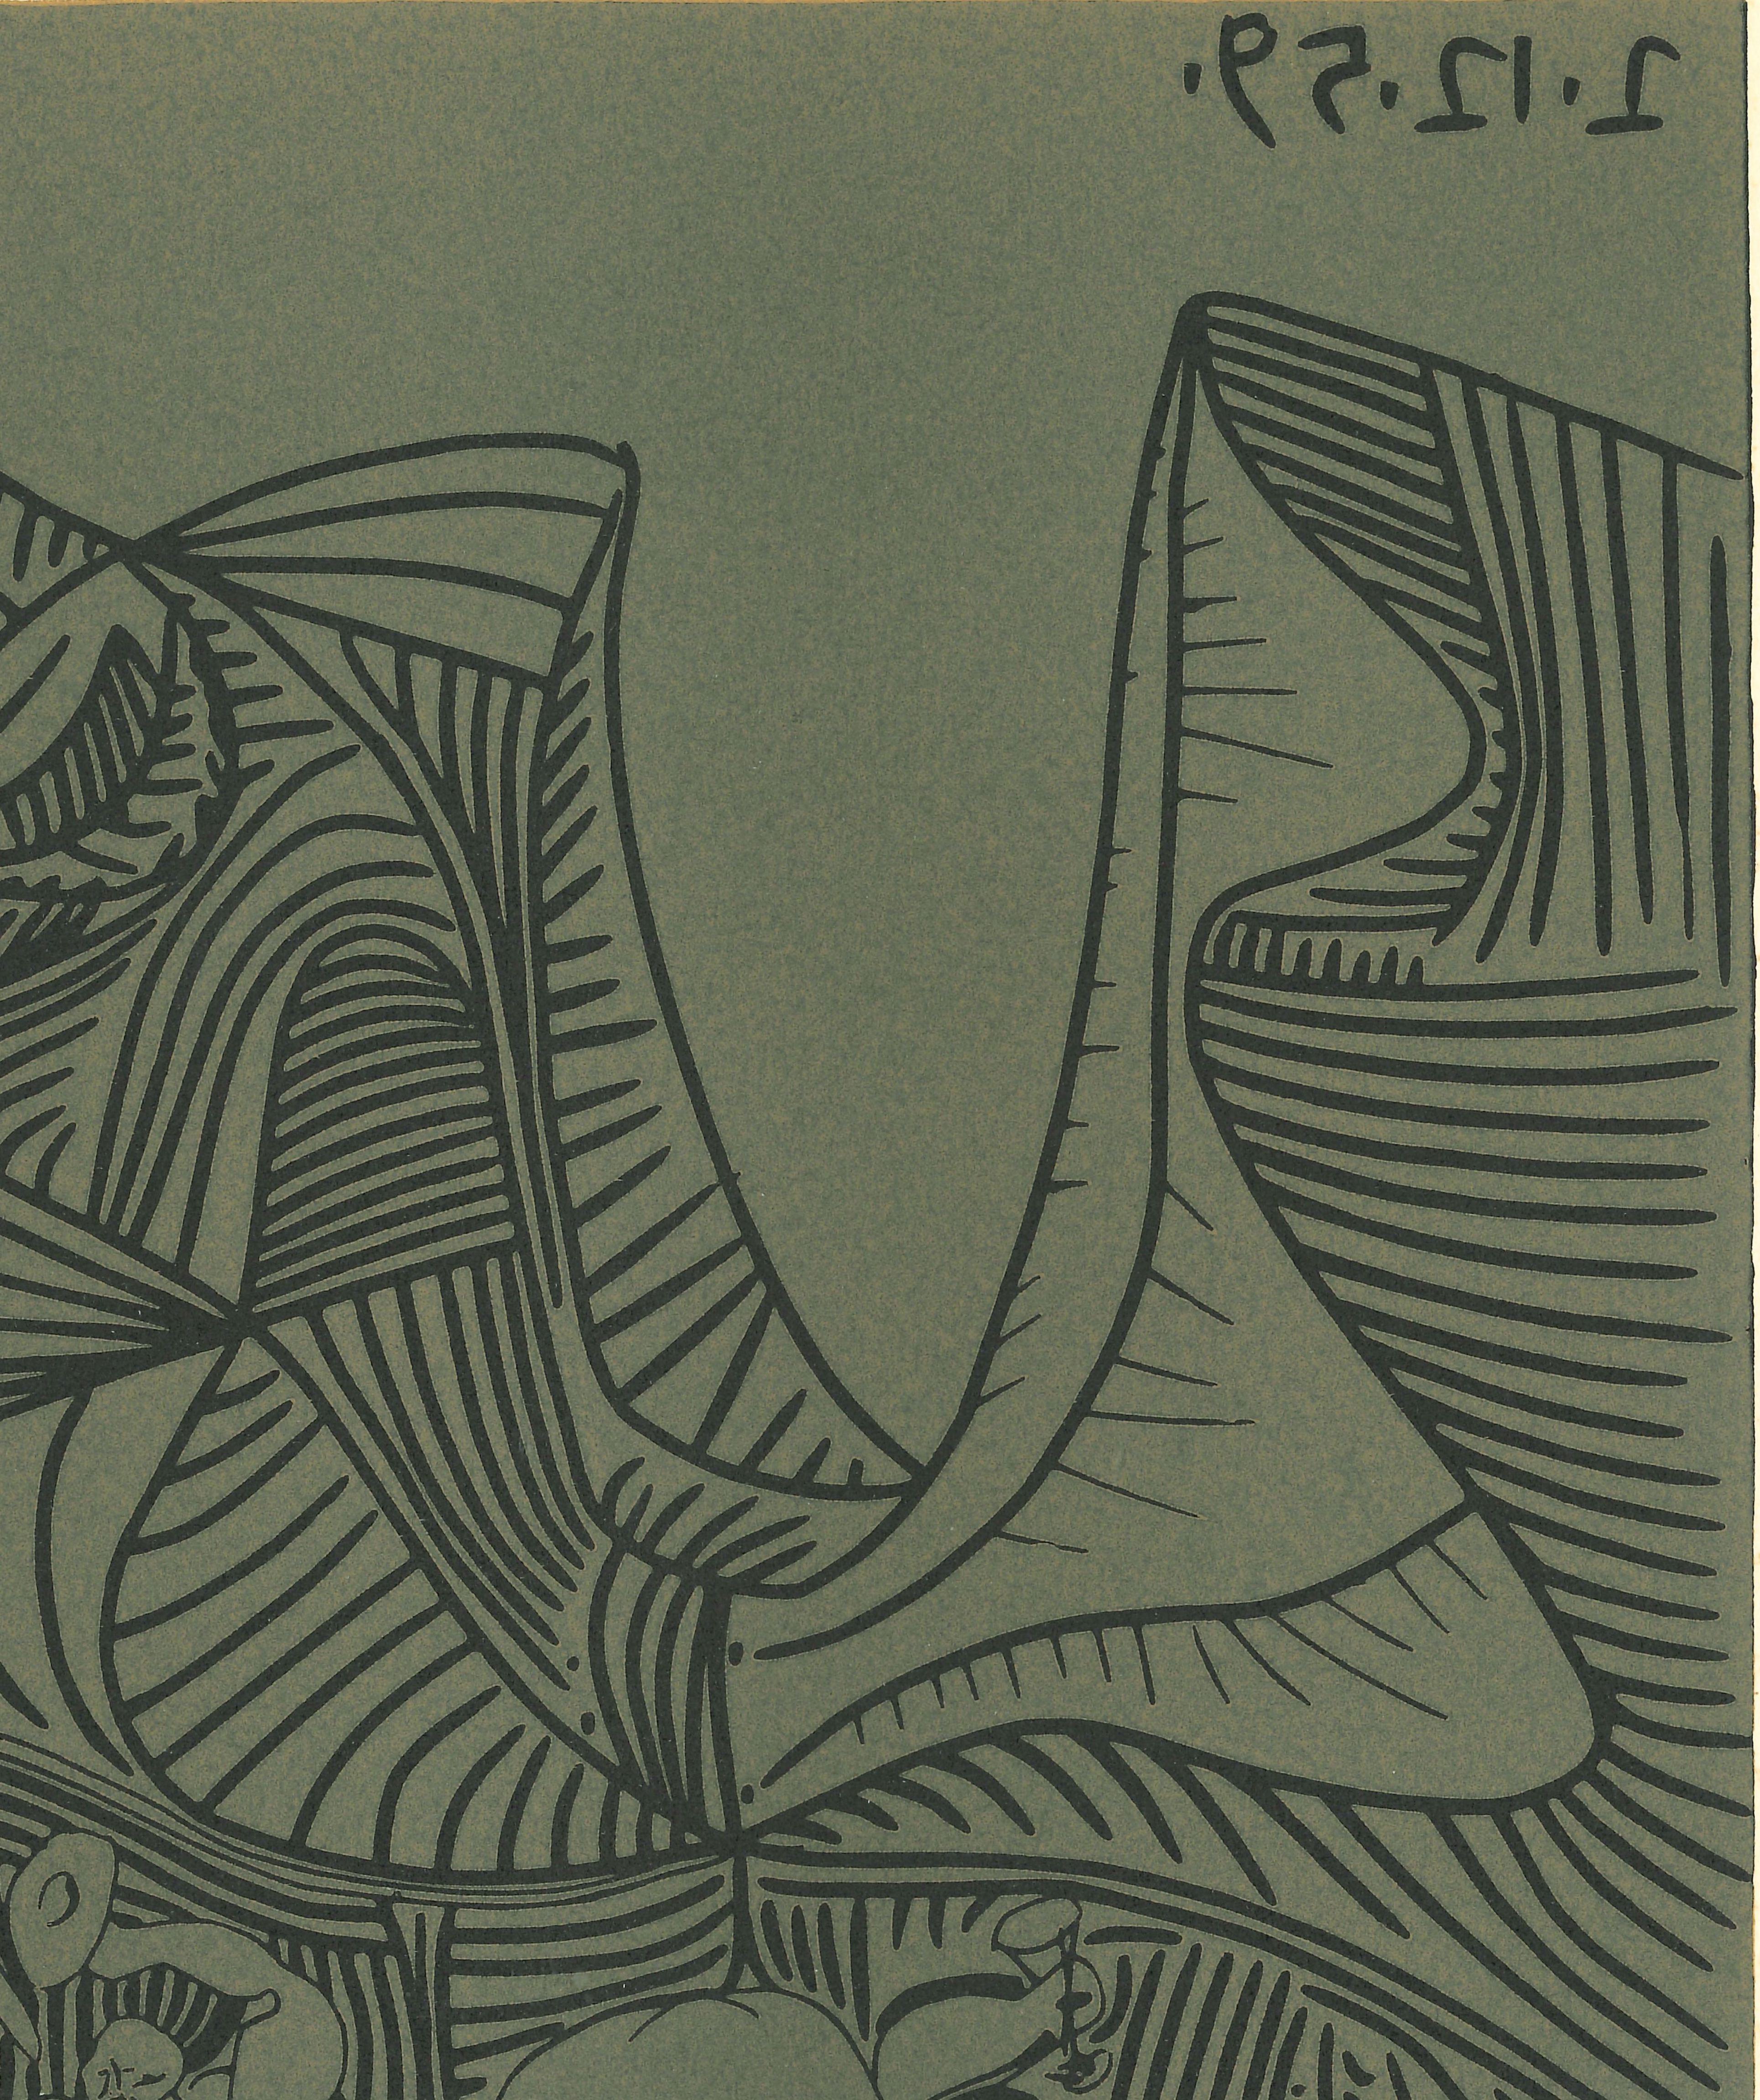 Bacchanale au Hibou  - Linocut Reproduction After Pablo Picasso - 1962 - Print by (after) Pablo Picasso